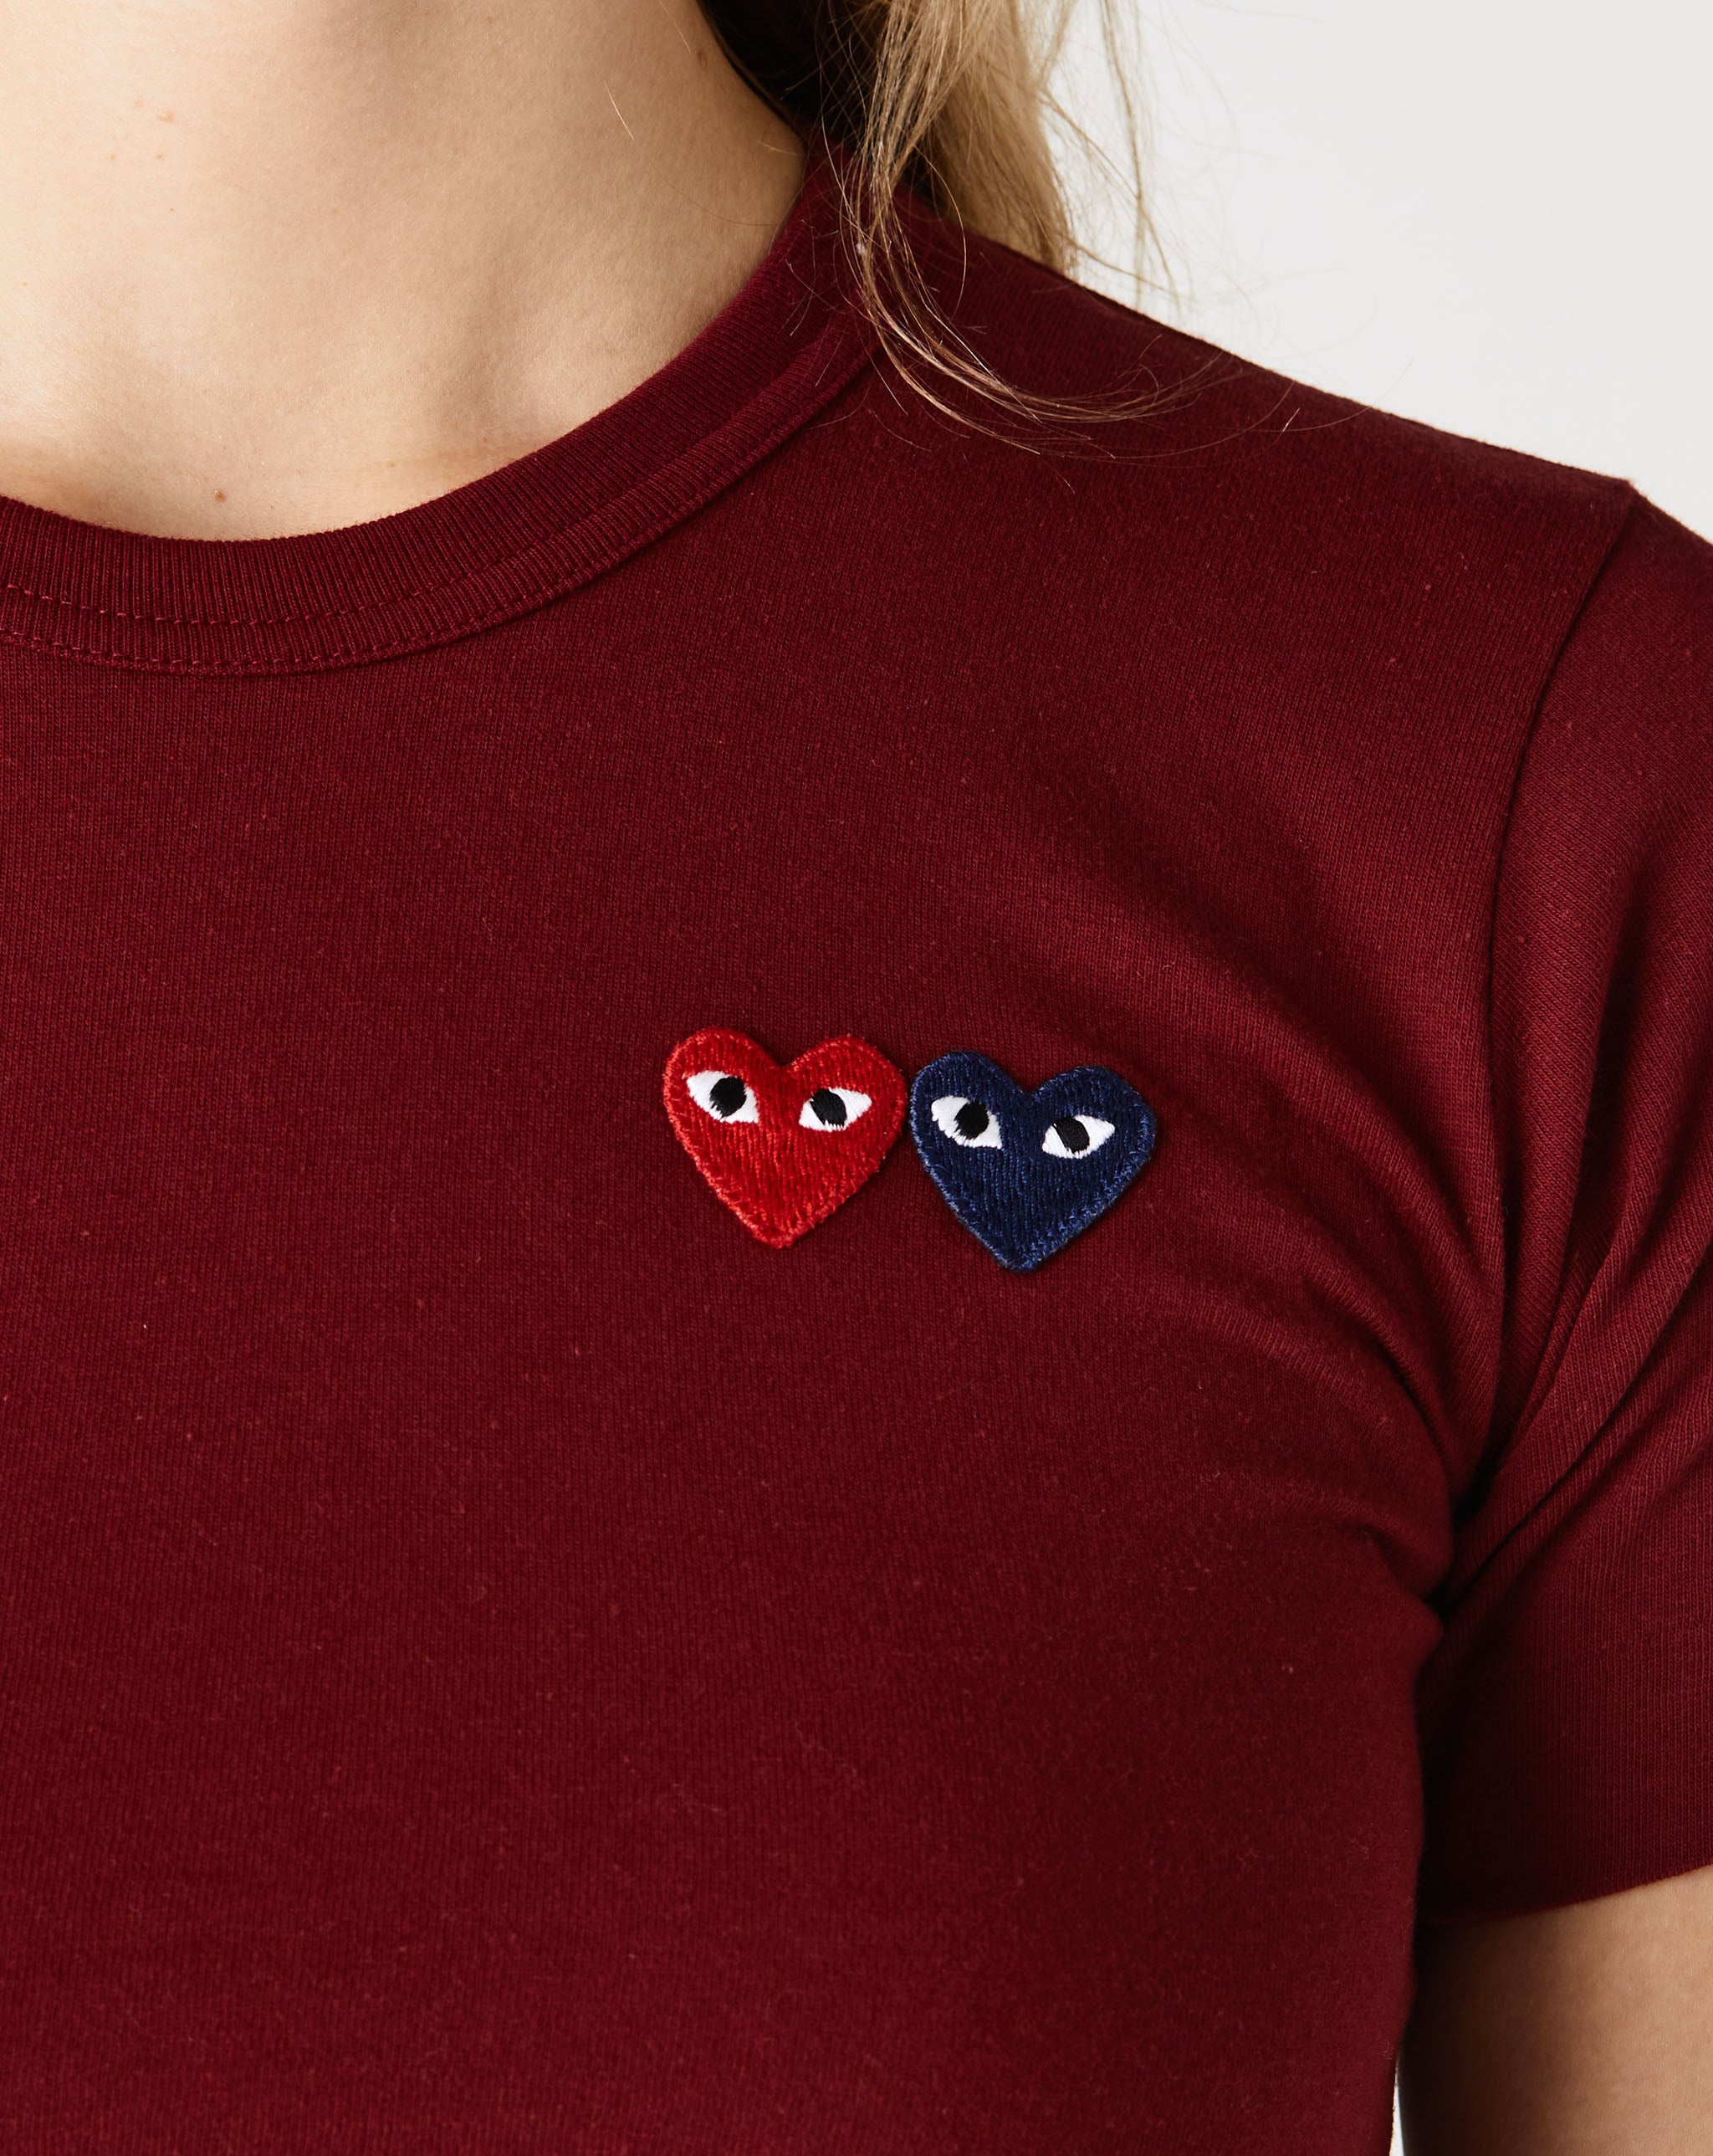 cotton appliqué-detail shirt Women's Mini Heart T-Shirt  - Cheap Urlfreeze Jordan outlet